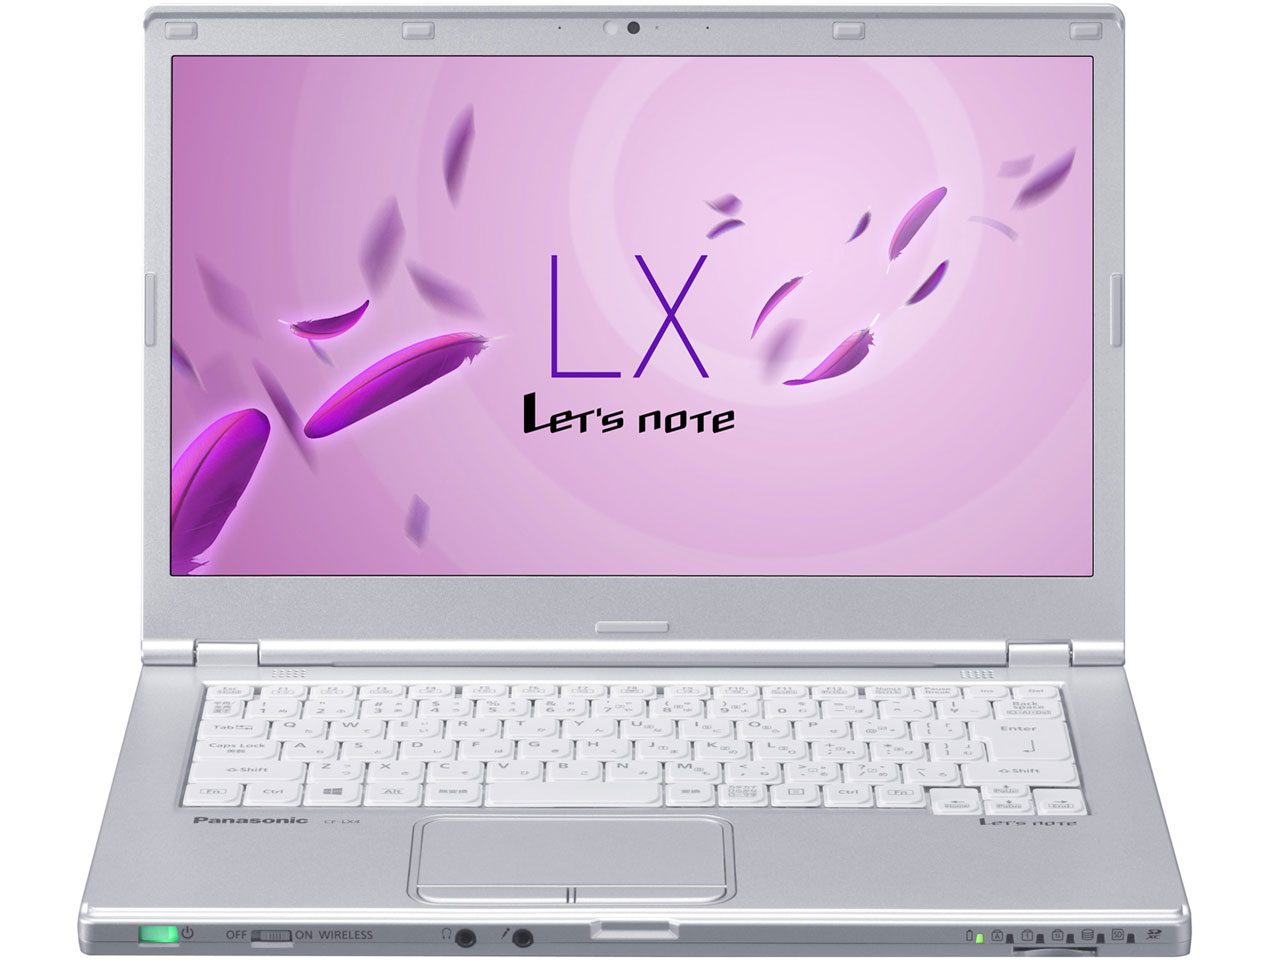 中古ノートパソコンPanasonic Let's note LX4 CF-LX4 CF-LX4EDHCS 【中古】 Panasonic Let's note LX4 中古ノートパソコンCore i5 Win7 Pro Panasonic Let's not